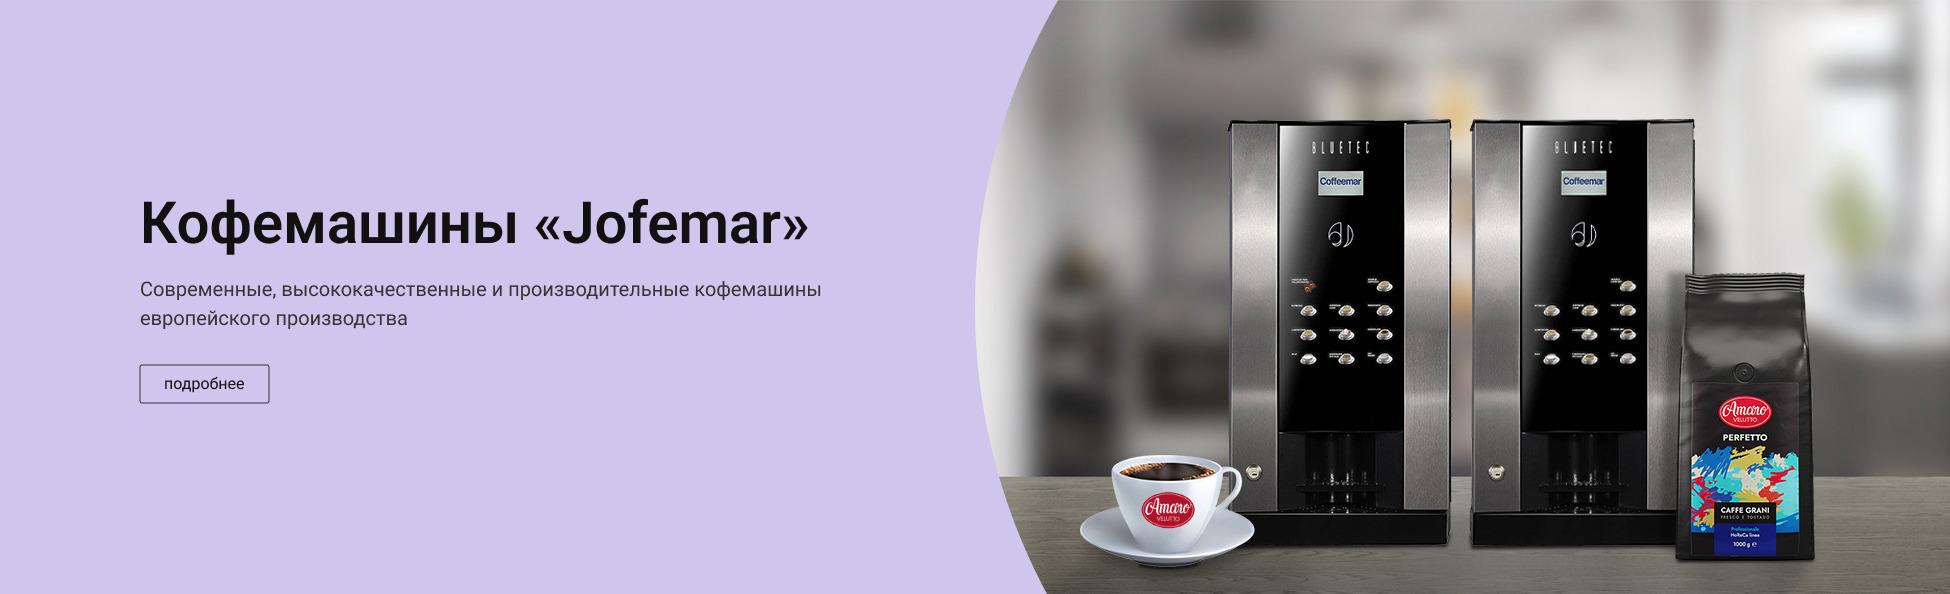 Кофемашины “Jofemar”